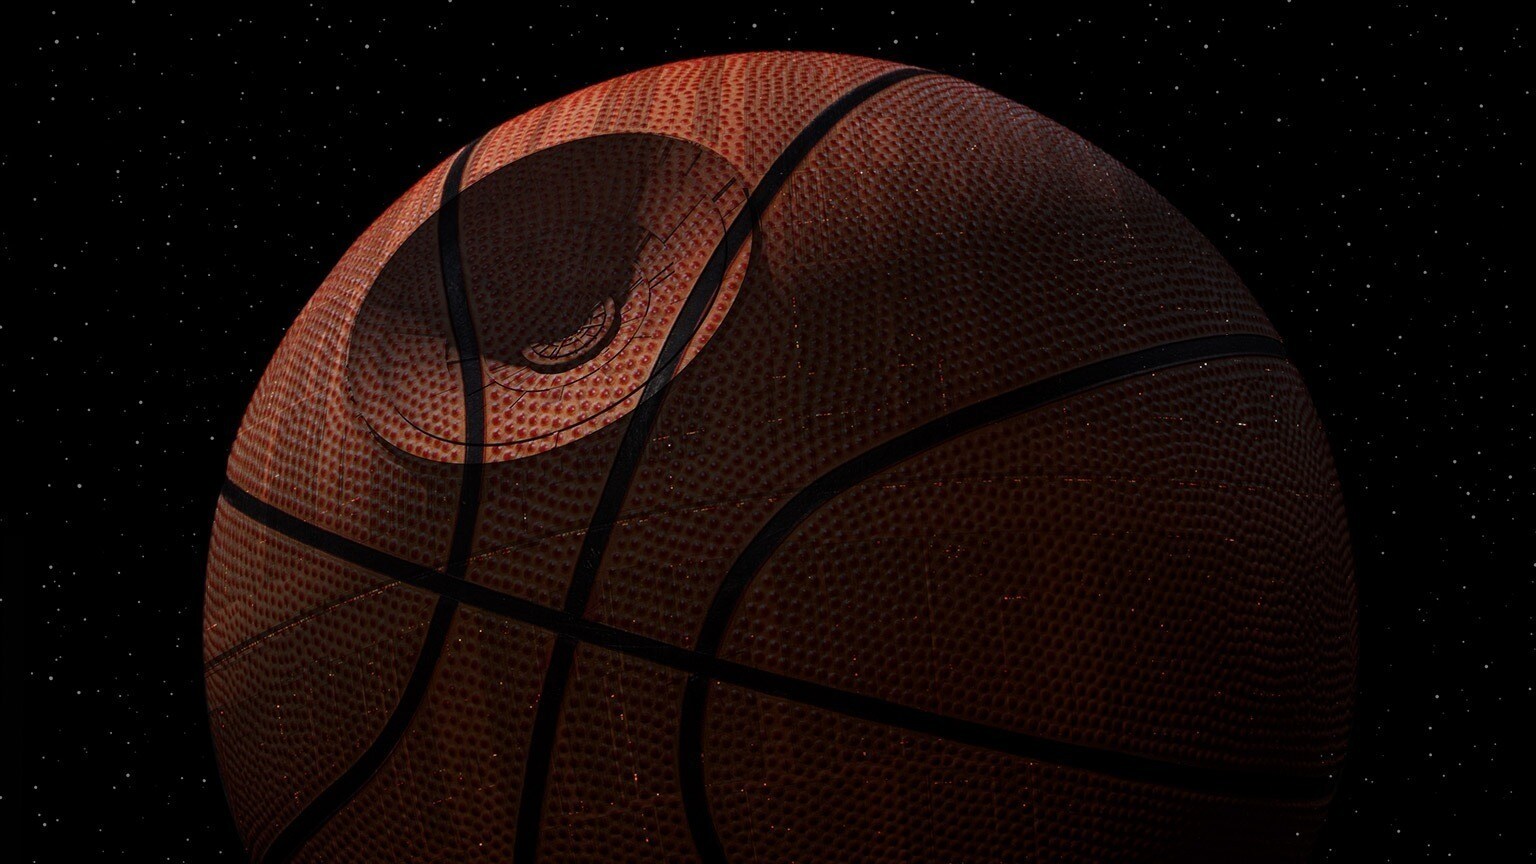 Star Wars Strikes Back at NBA Games This Season